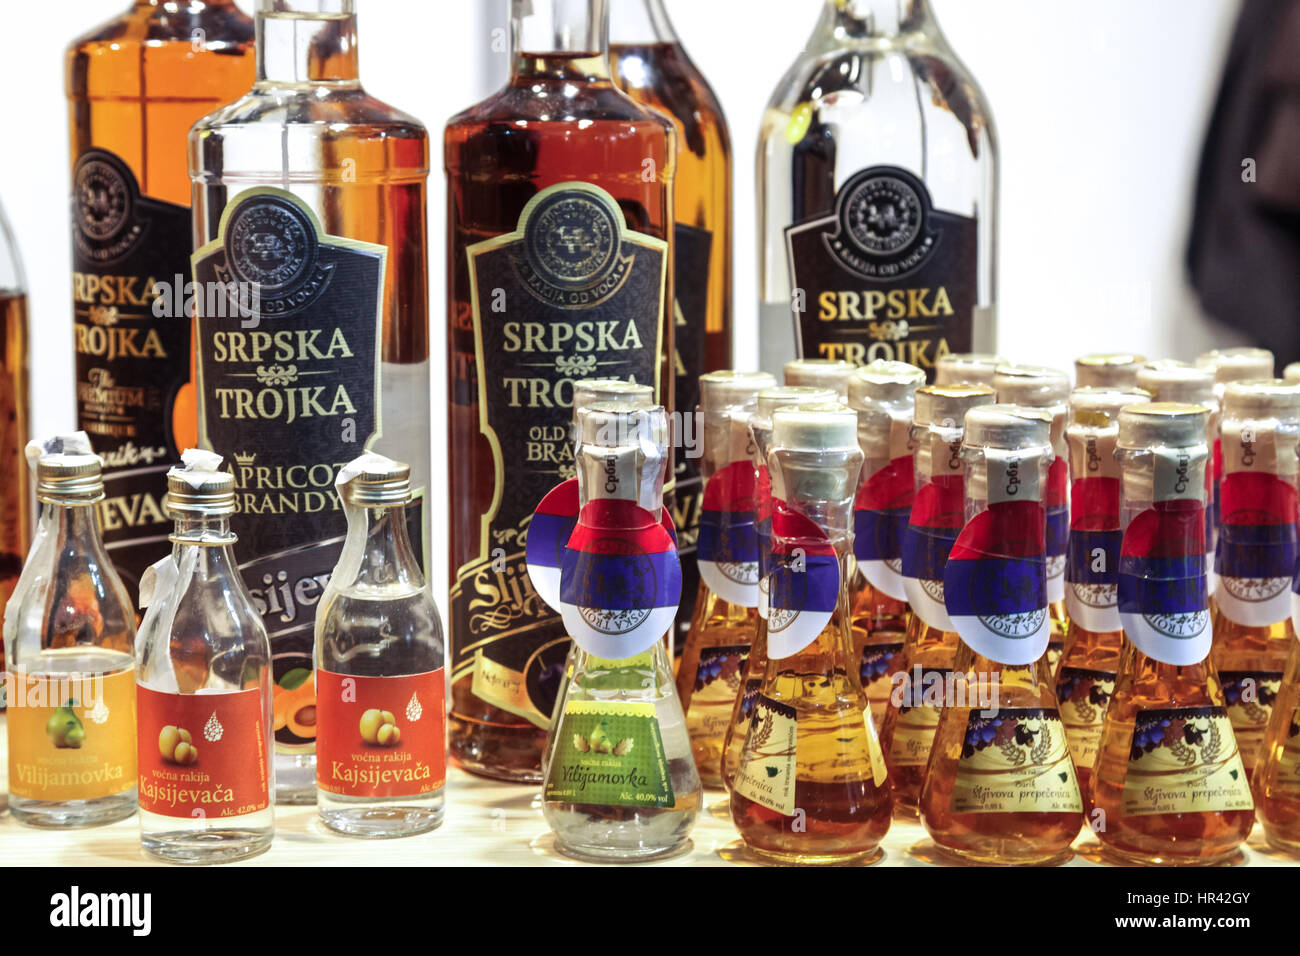 Belgrad, Serbien - 25. Februar 2017: Verschiedene Flaschen Schnaps, in  verschiedenen Größen und Geschmacksrichtungen, auf dem Display während der  2017 Belgrad Tourismus Messe Pi Stockfotografie - Alamy